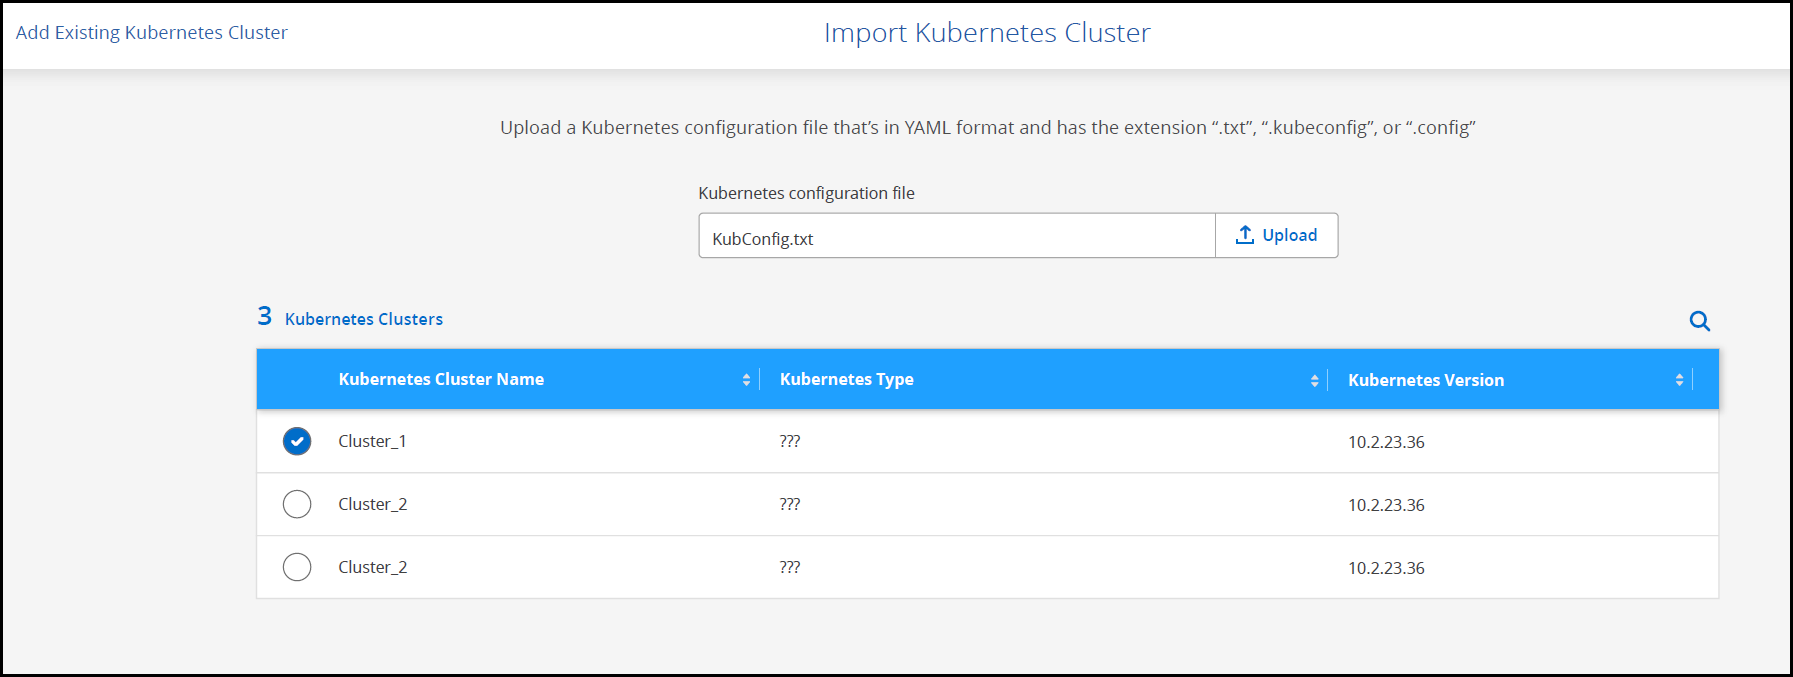 匯入Kubernetes叢集頁面的快照、內含組態檔和可用叢集表格。